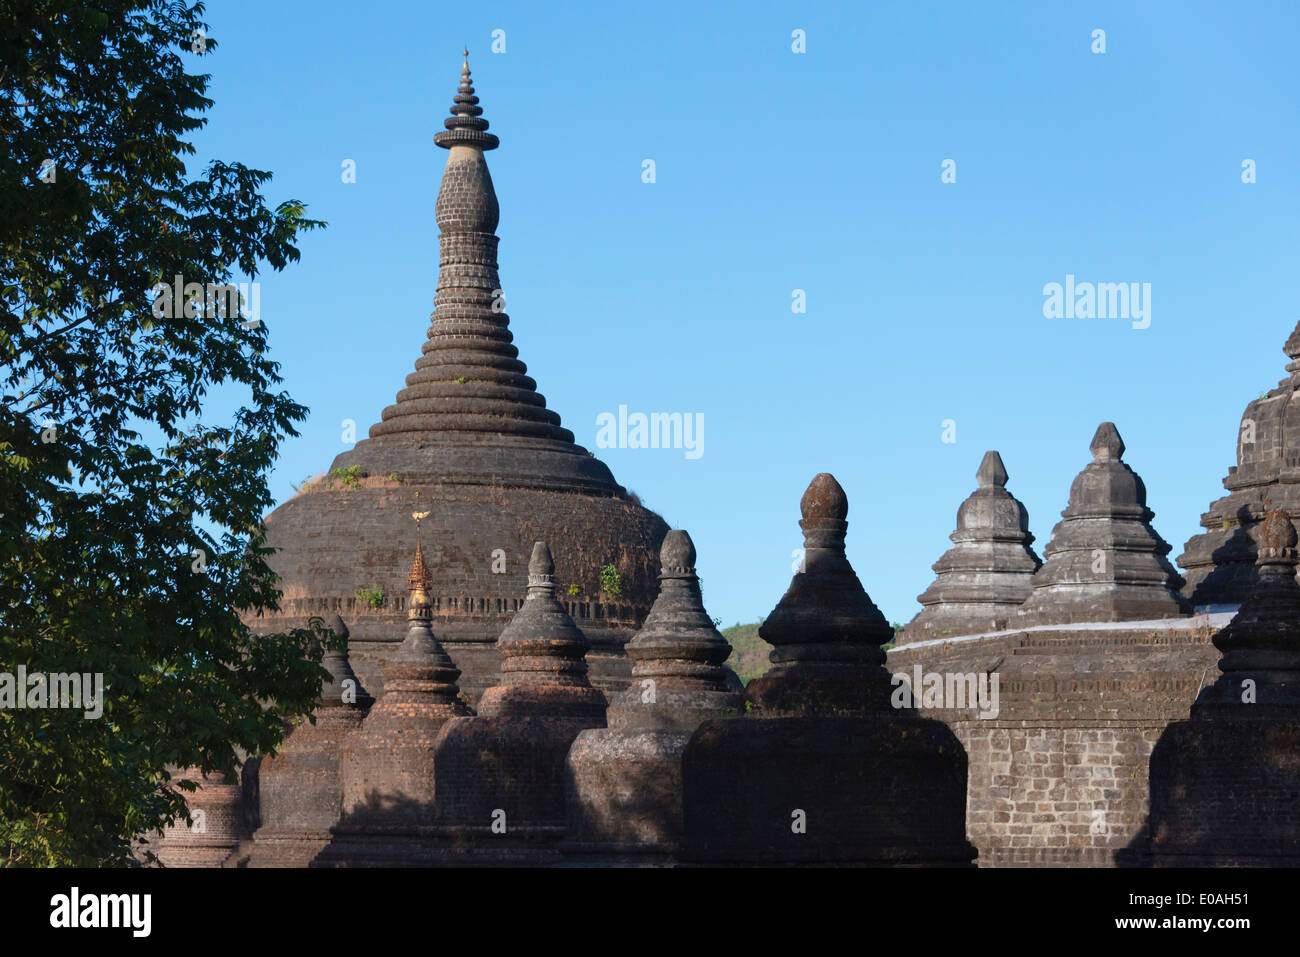 Andaw-thein Temple, Mrauk-U, Rakhine State, Myanmar Stock Photo